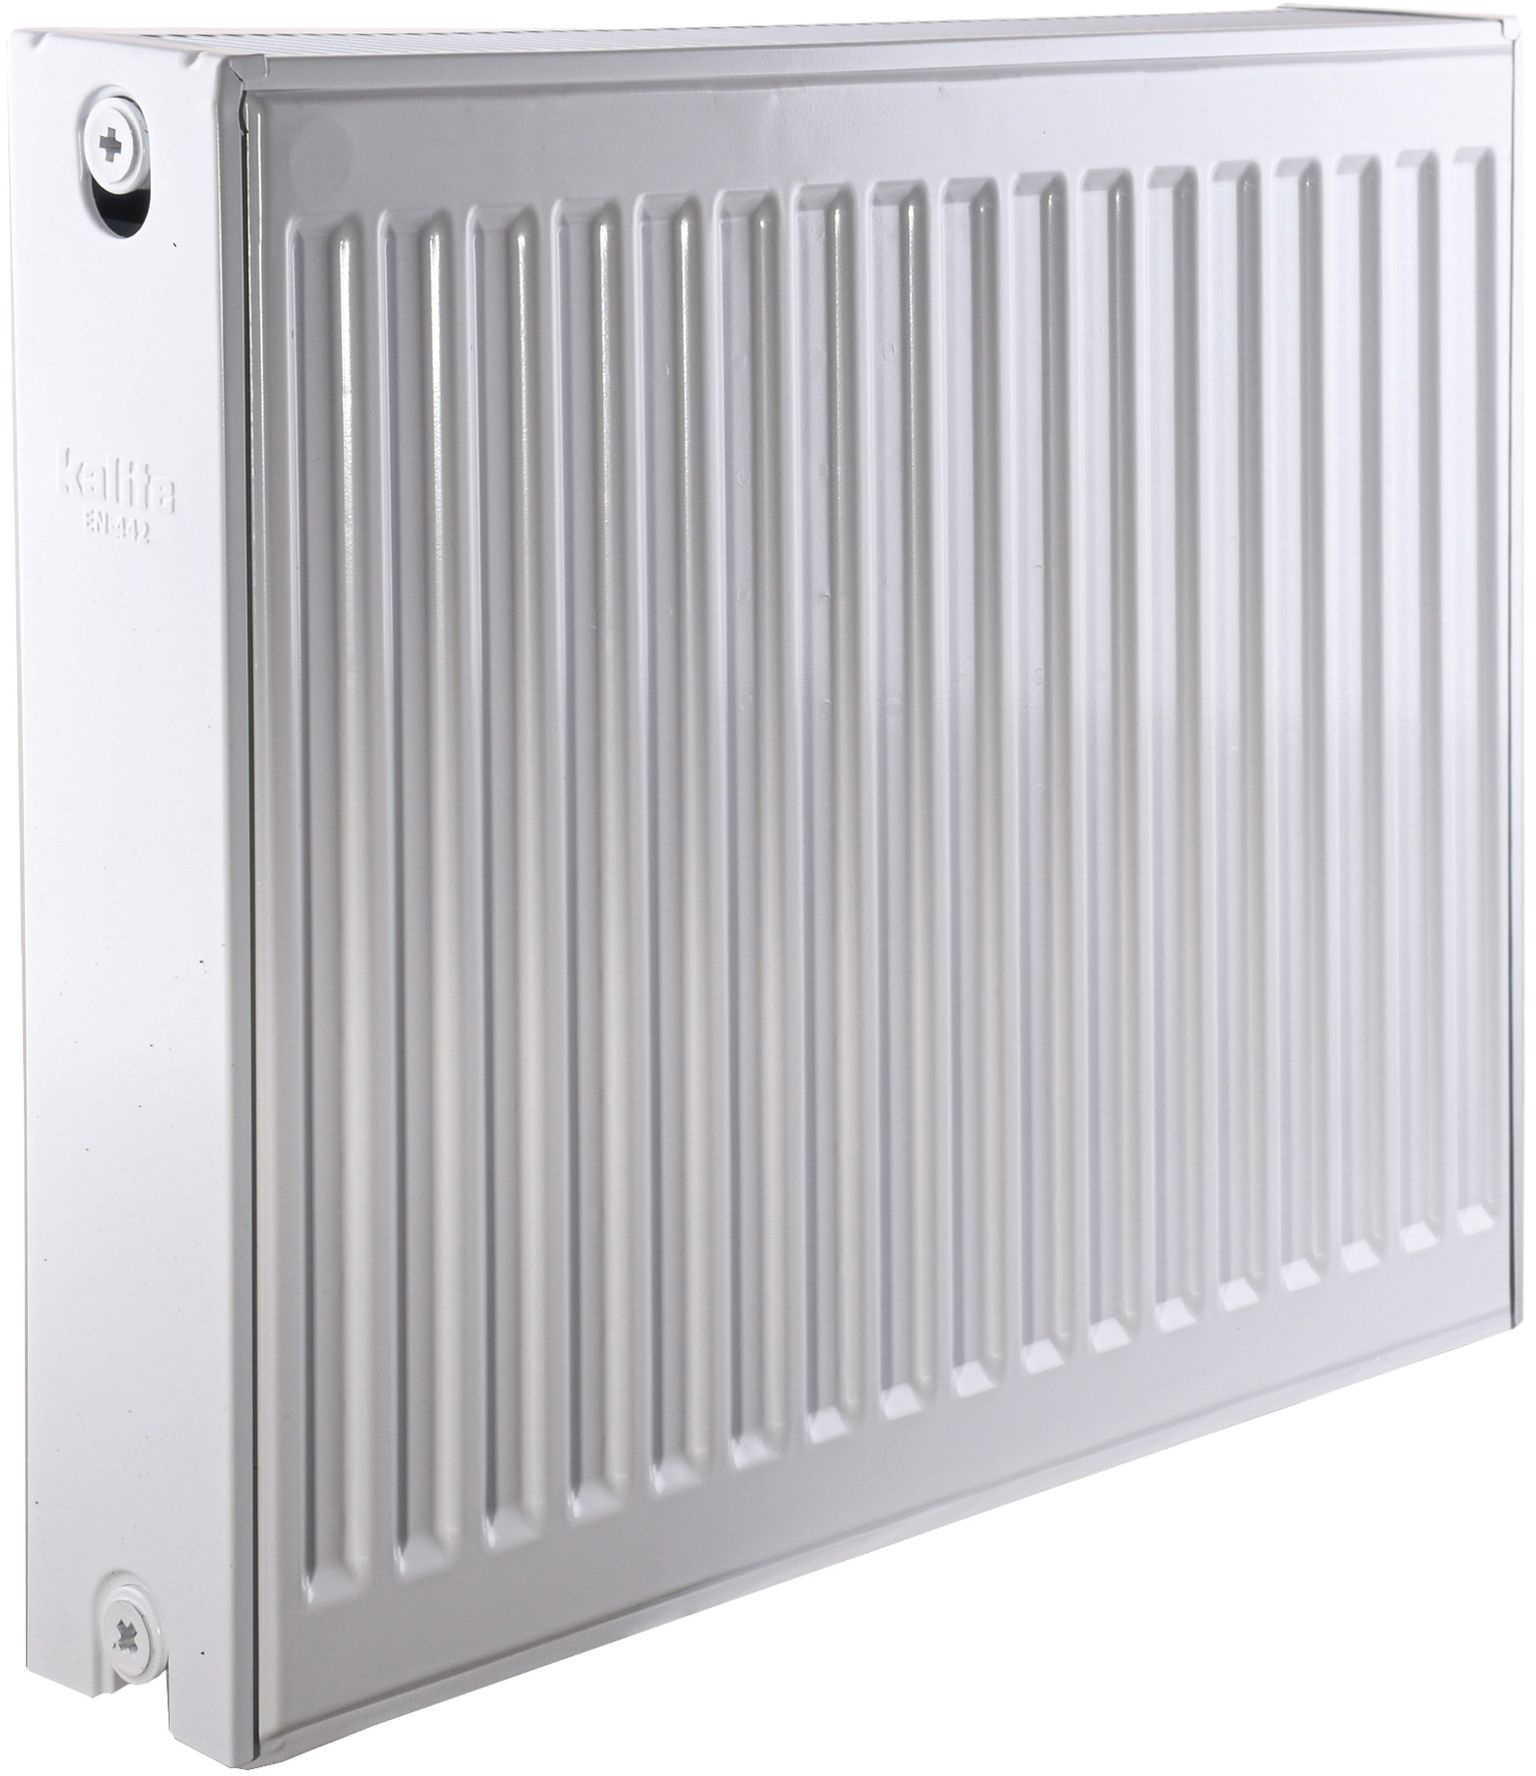 Радиатор для отопления Kalite 22 бок 500x600